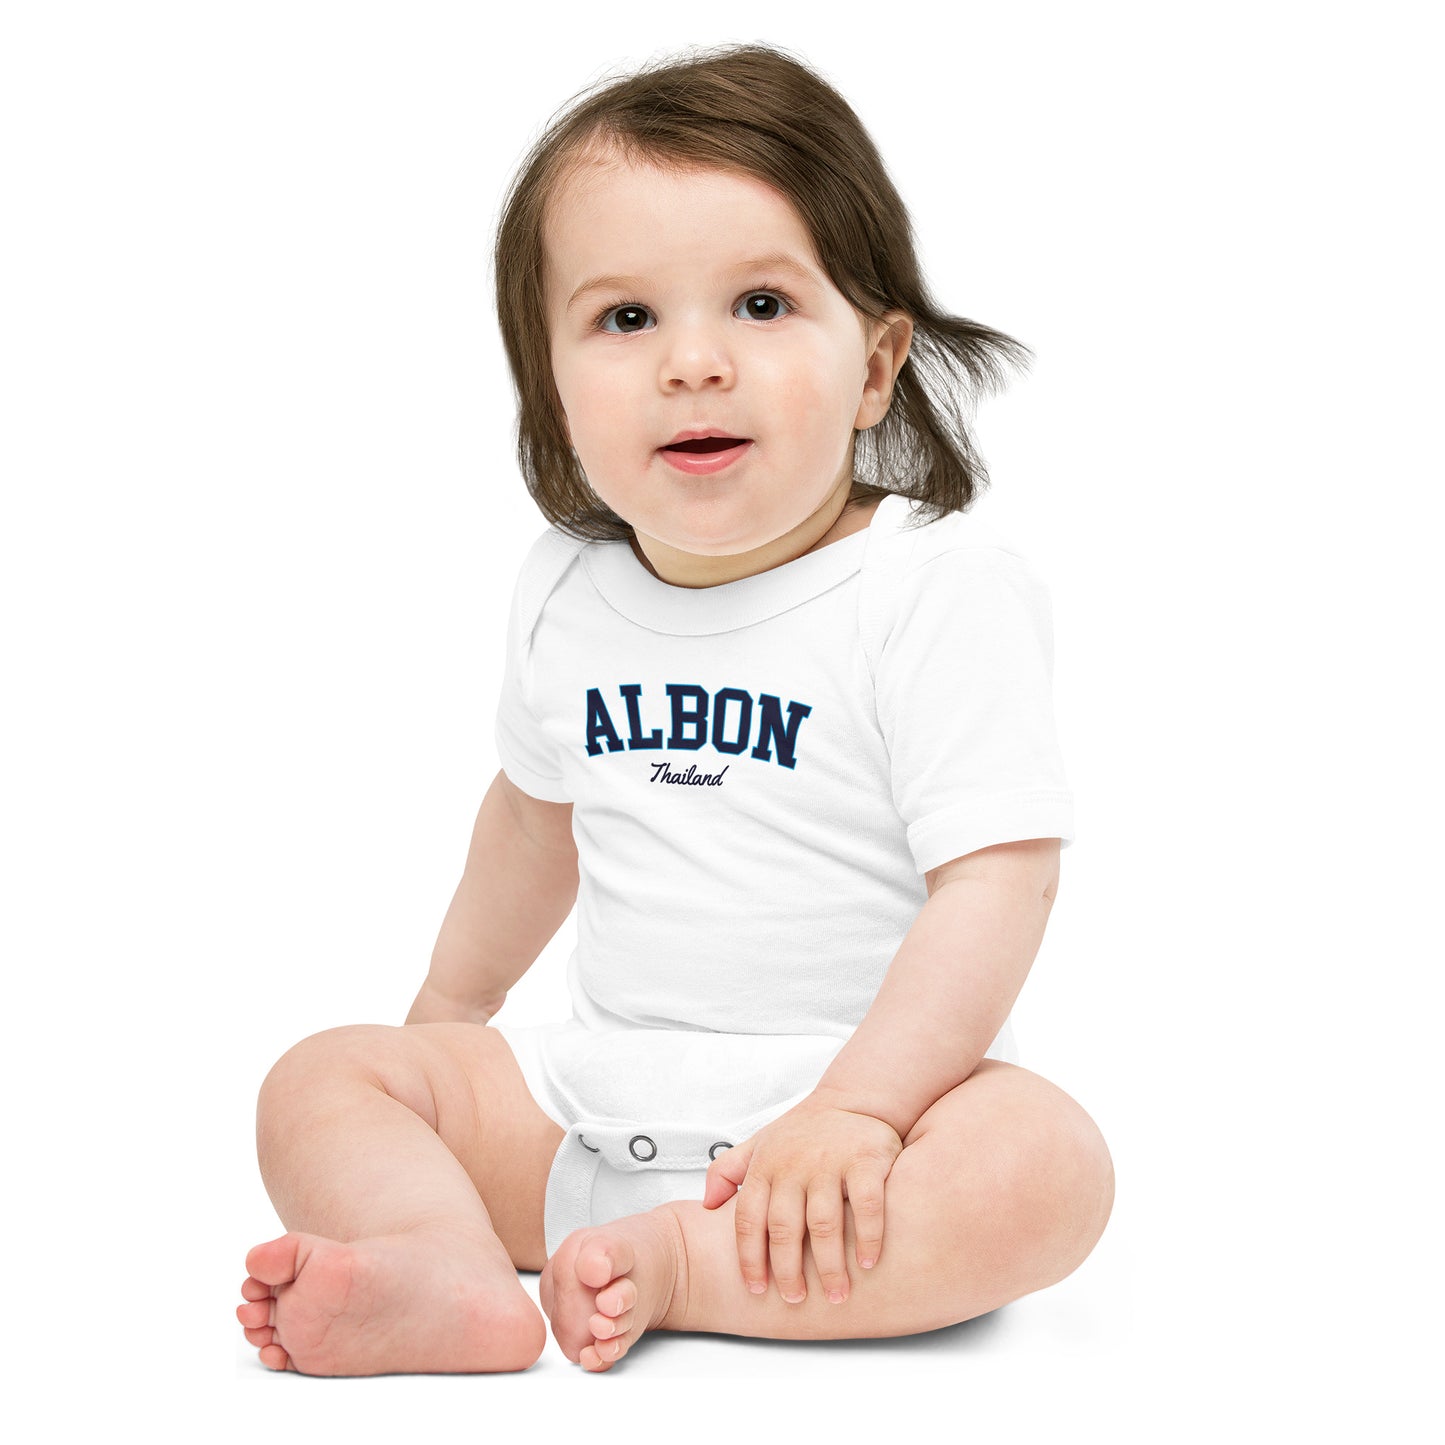 Albon Baby Onesie